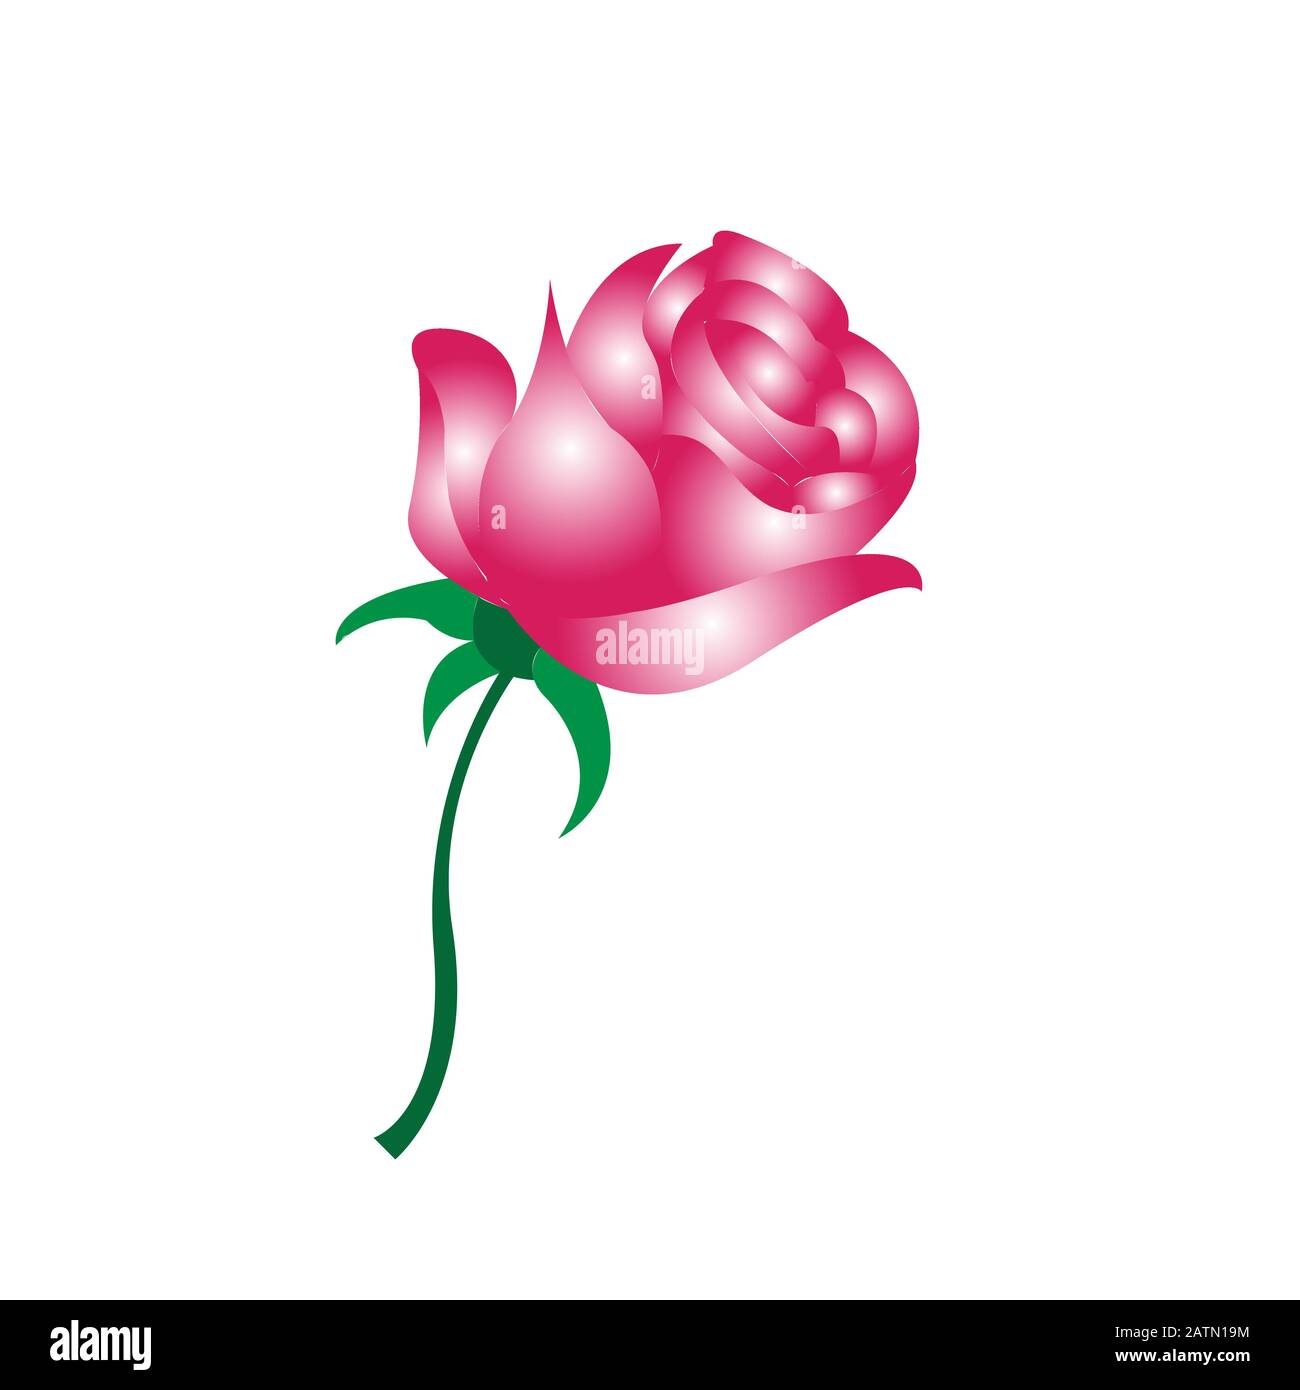 Rose A Colori D'Acqua Disegnate A Mano, Bouquet Di Fiori E Foglia Verde. Romantico Giardino D'Estate Wreath Di Rosa Isolato Rosa Illustrazione Vettoriale